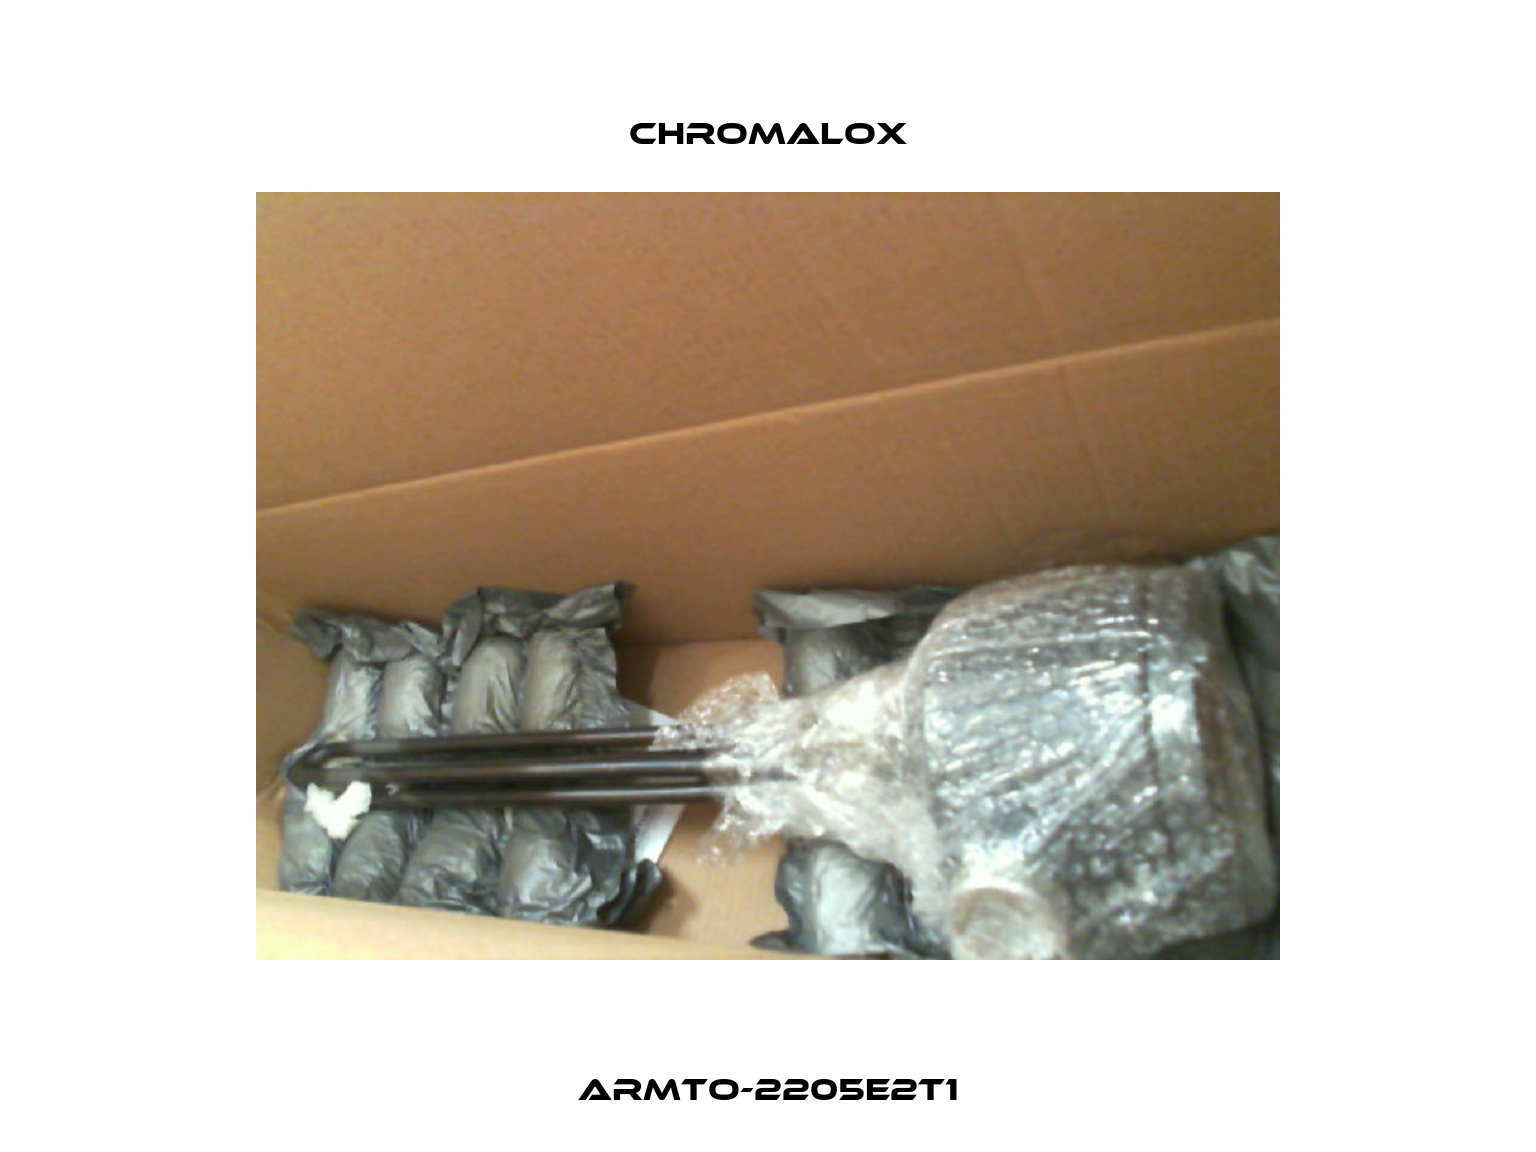 ARMTO-2205E2T1 Chromalox